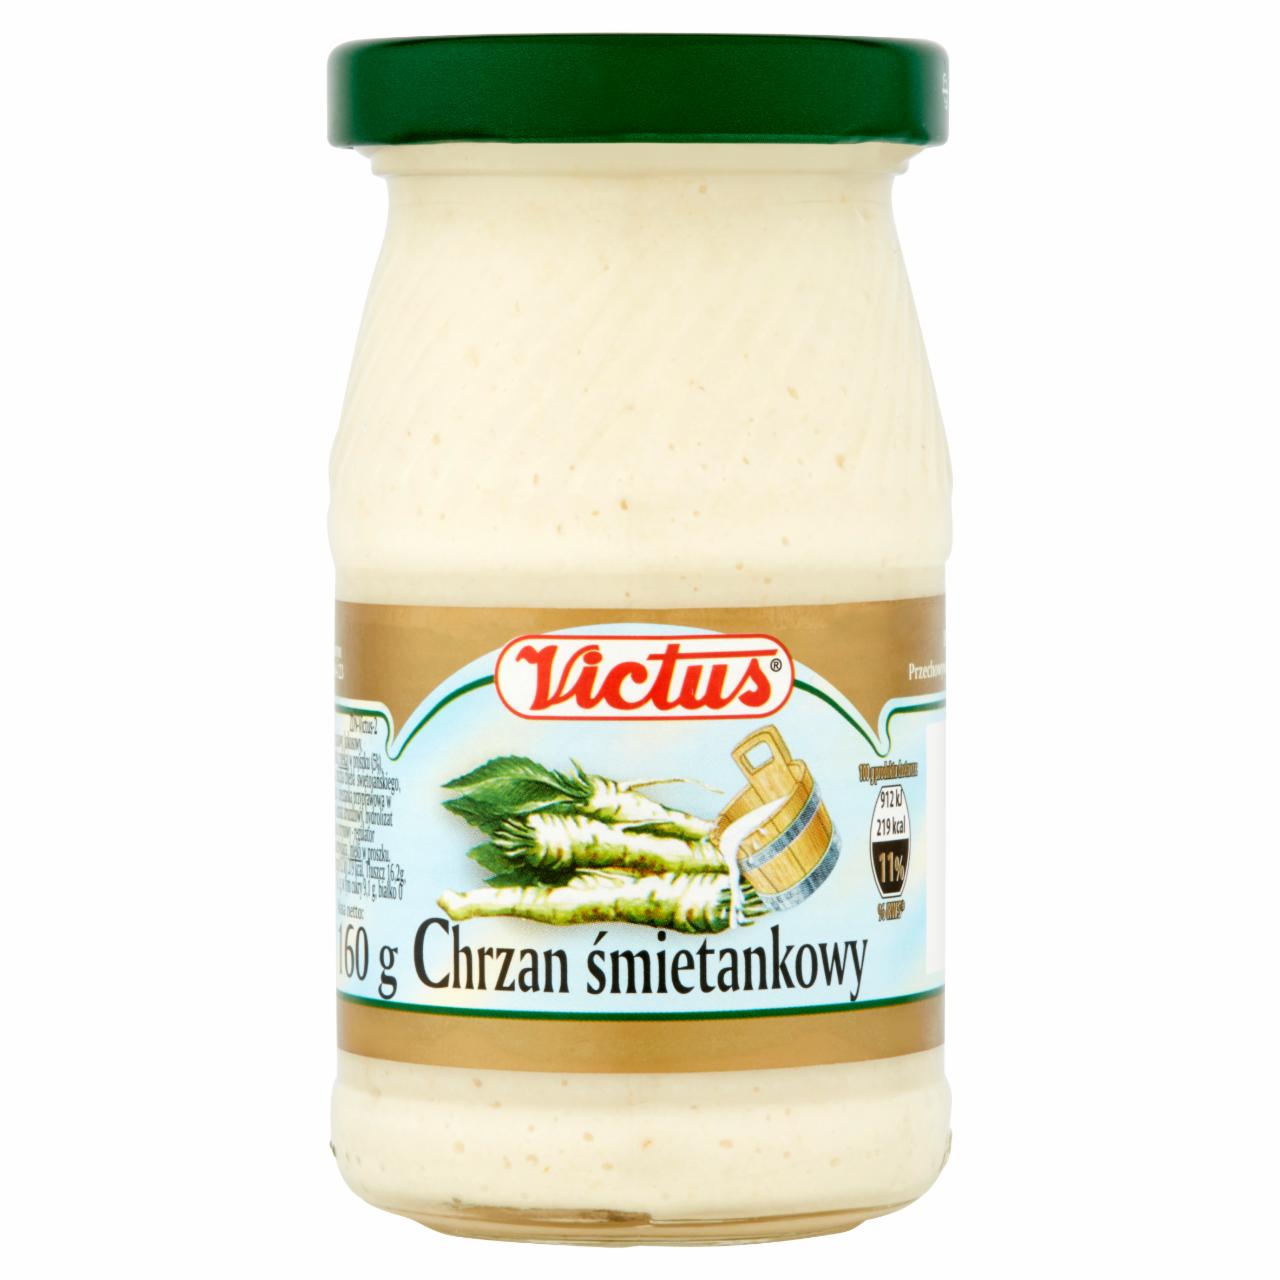 Photo - Victus Creamy Horseradish 160 g